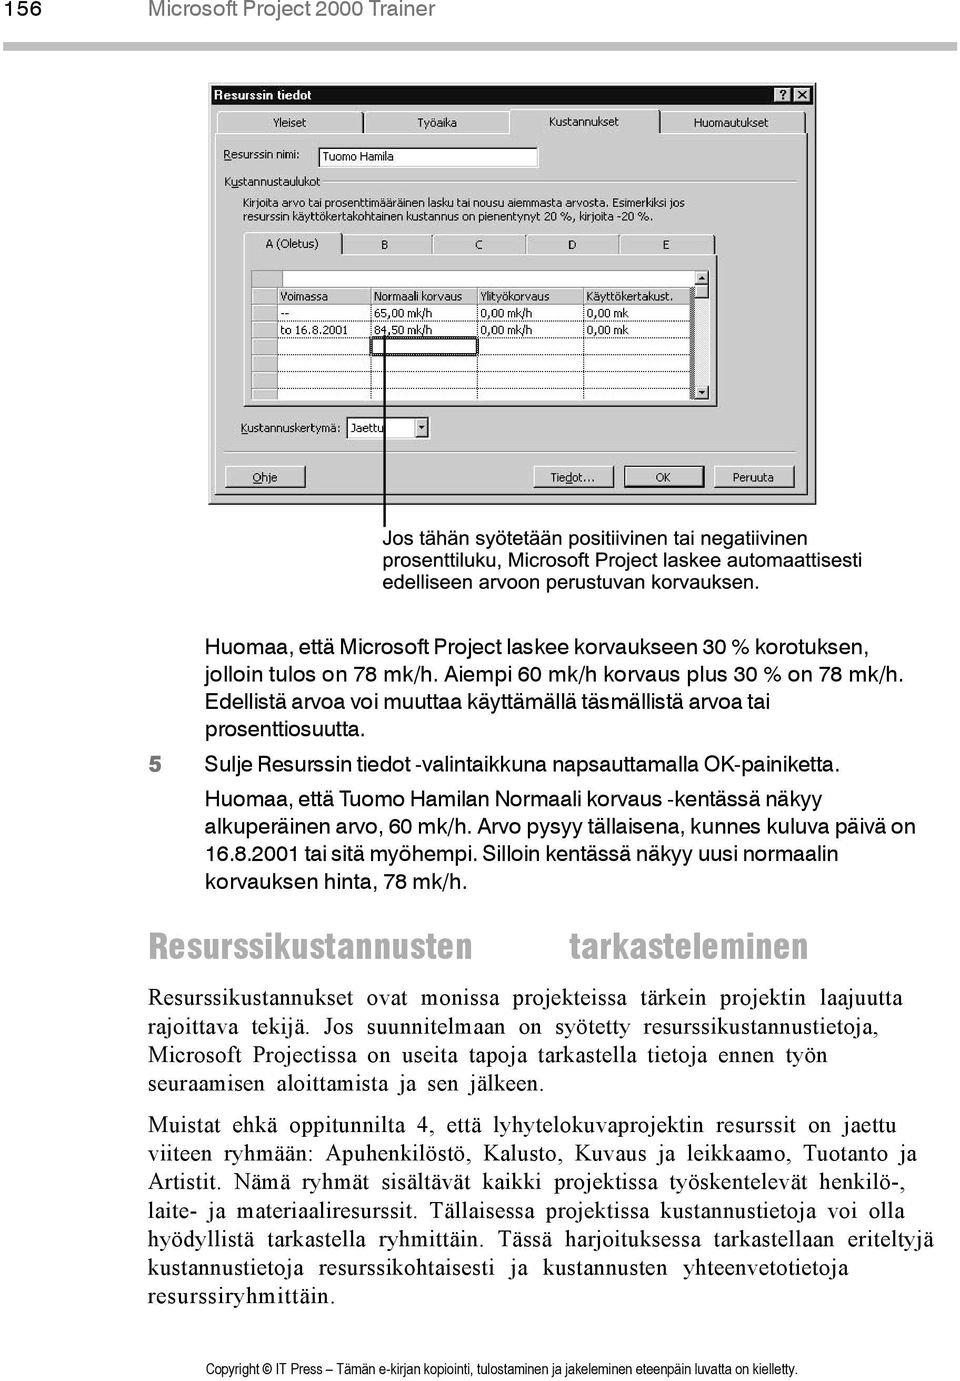 Huomaa, että Tuomo Hamilan Normaali korvaus -kentässä näkyy alkuperäinen arvo, 60 mk/h. Arvo pysyy tällaisena, kunnes kuluva päivä on 16.8.2001 tai sitä myöhempi.